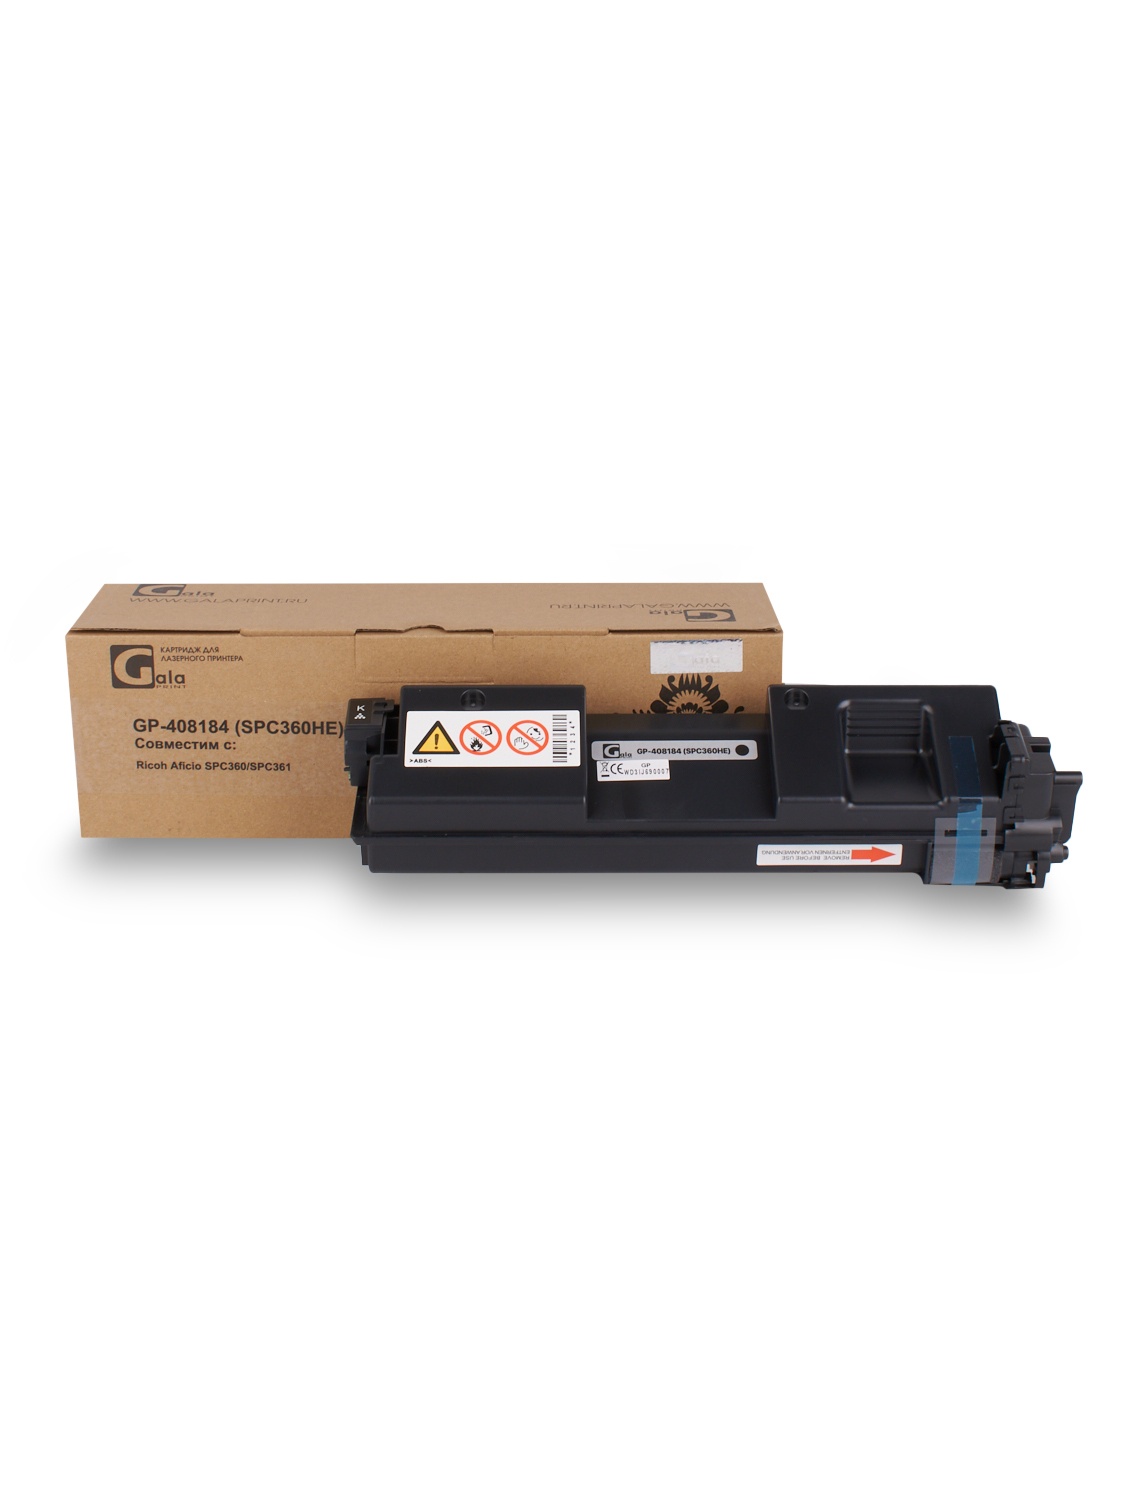 Принт-картридж GP-408184 (SP-C360HE) для принтеров Ricoh Aficio SPC360/SPC361 Black 7000 копий GalaPrint